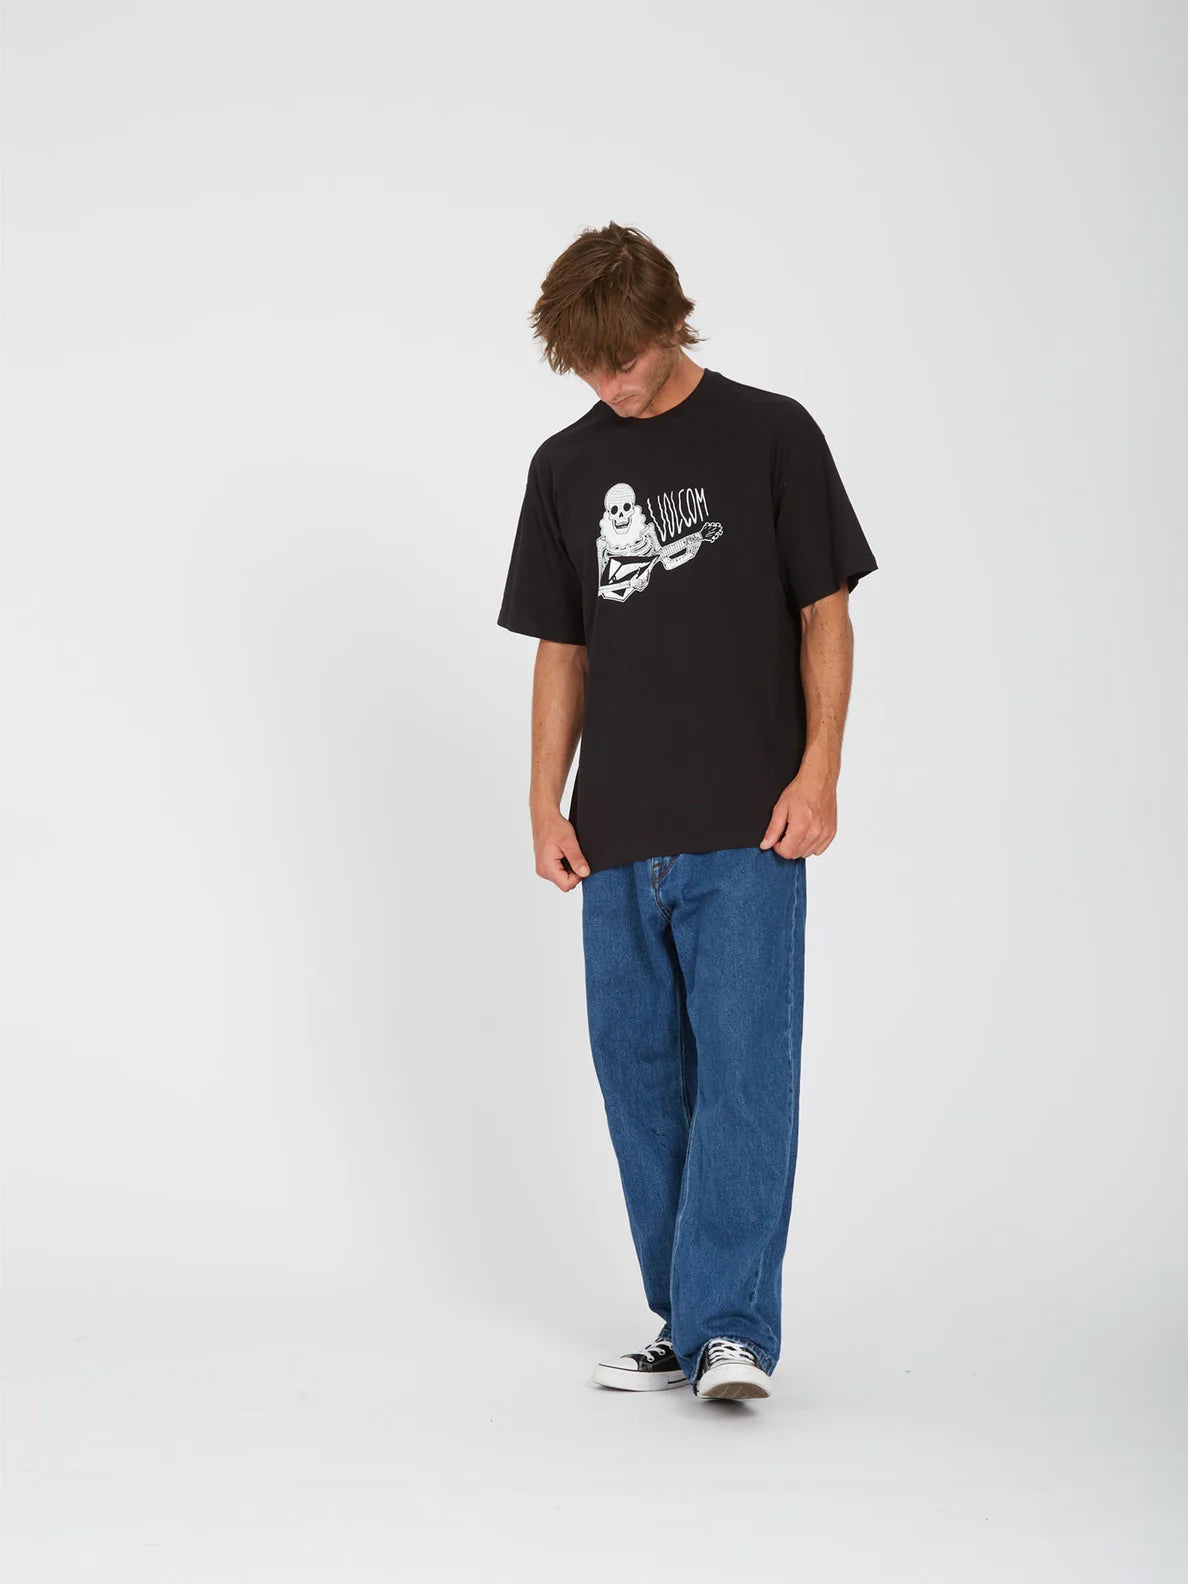 Camiseta Volcom Shredead Black | Camisetas de hombre | Camisetas manga corta de hombre | Volcom Shop | surfdevils.com